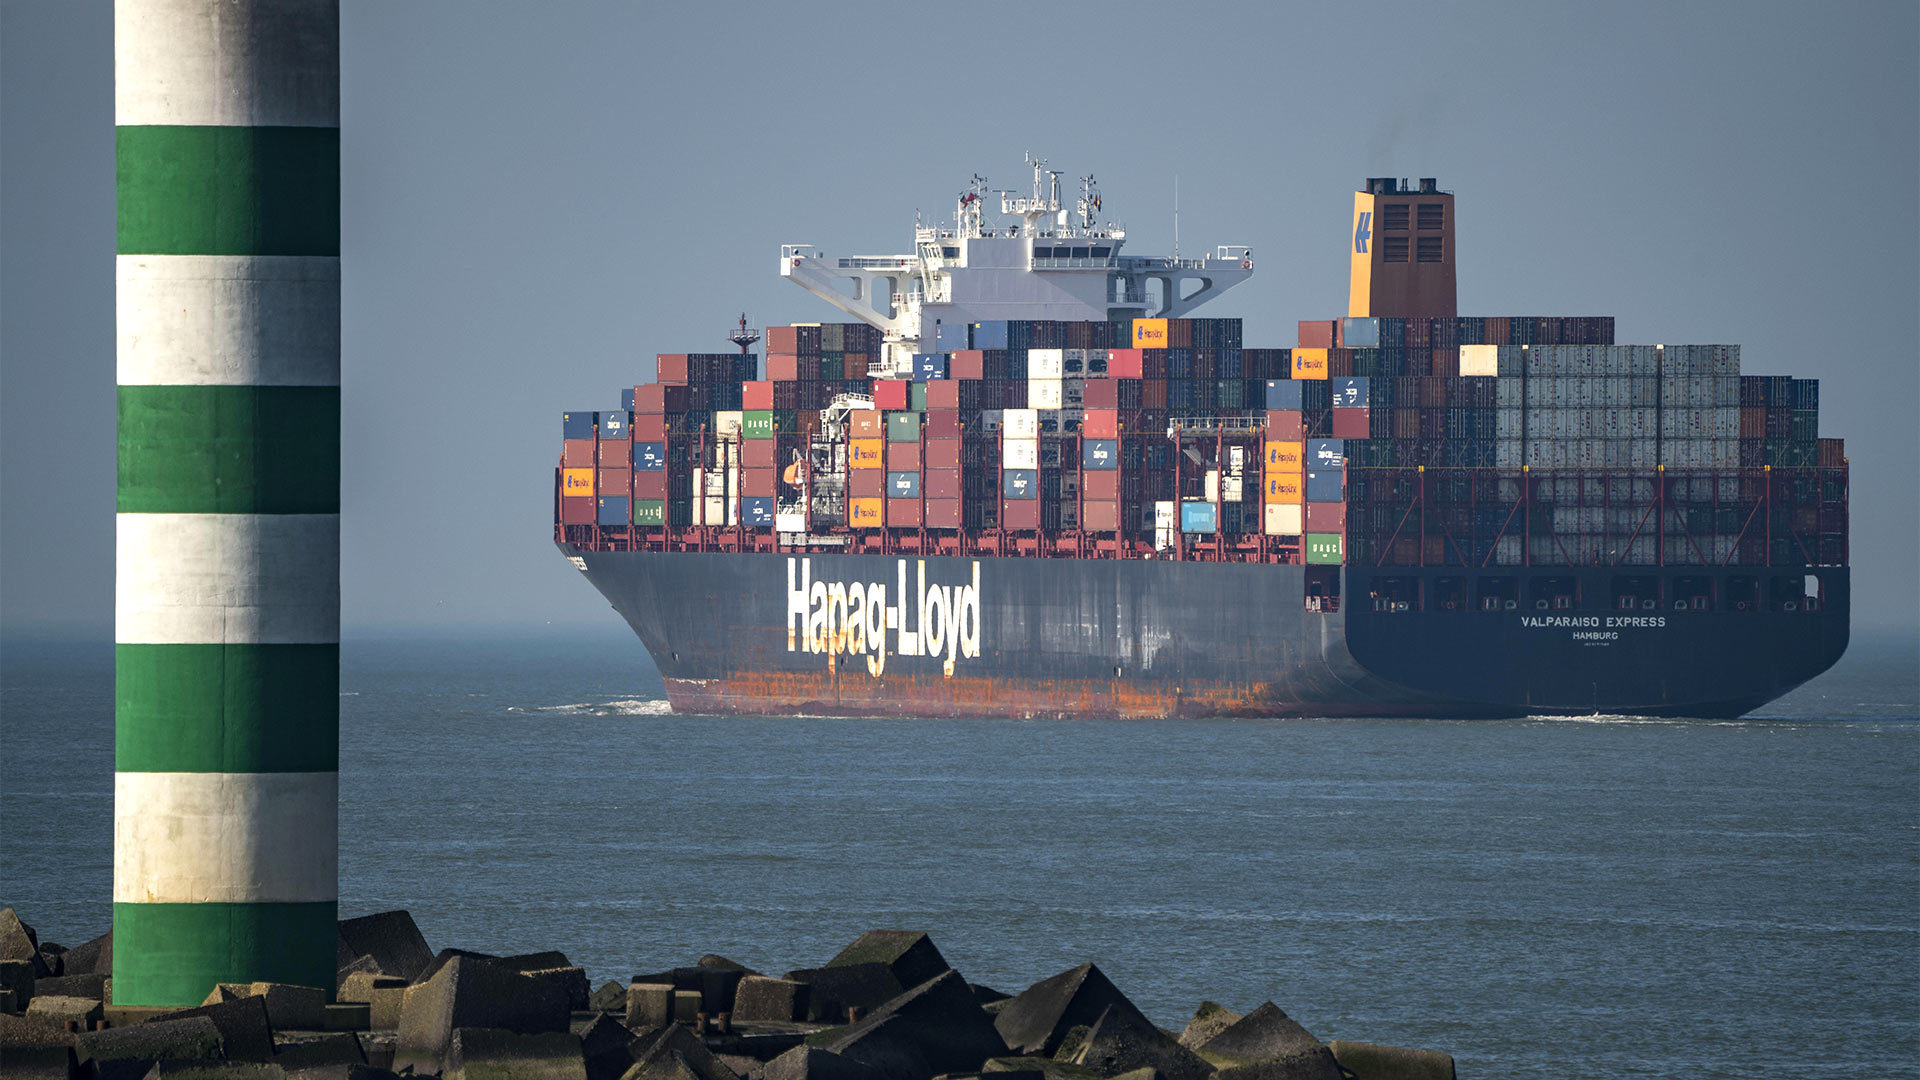 Ein Containerfrachtschiff der Reederei Hapag-Lloyd, in der Hafenausfahrt des Tiefseehafen von Rotterdam, Niederlande | picture alliance / Jochen Tack